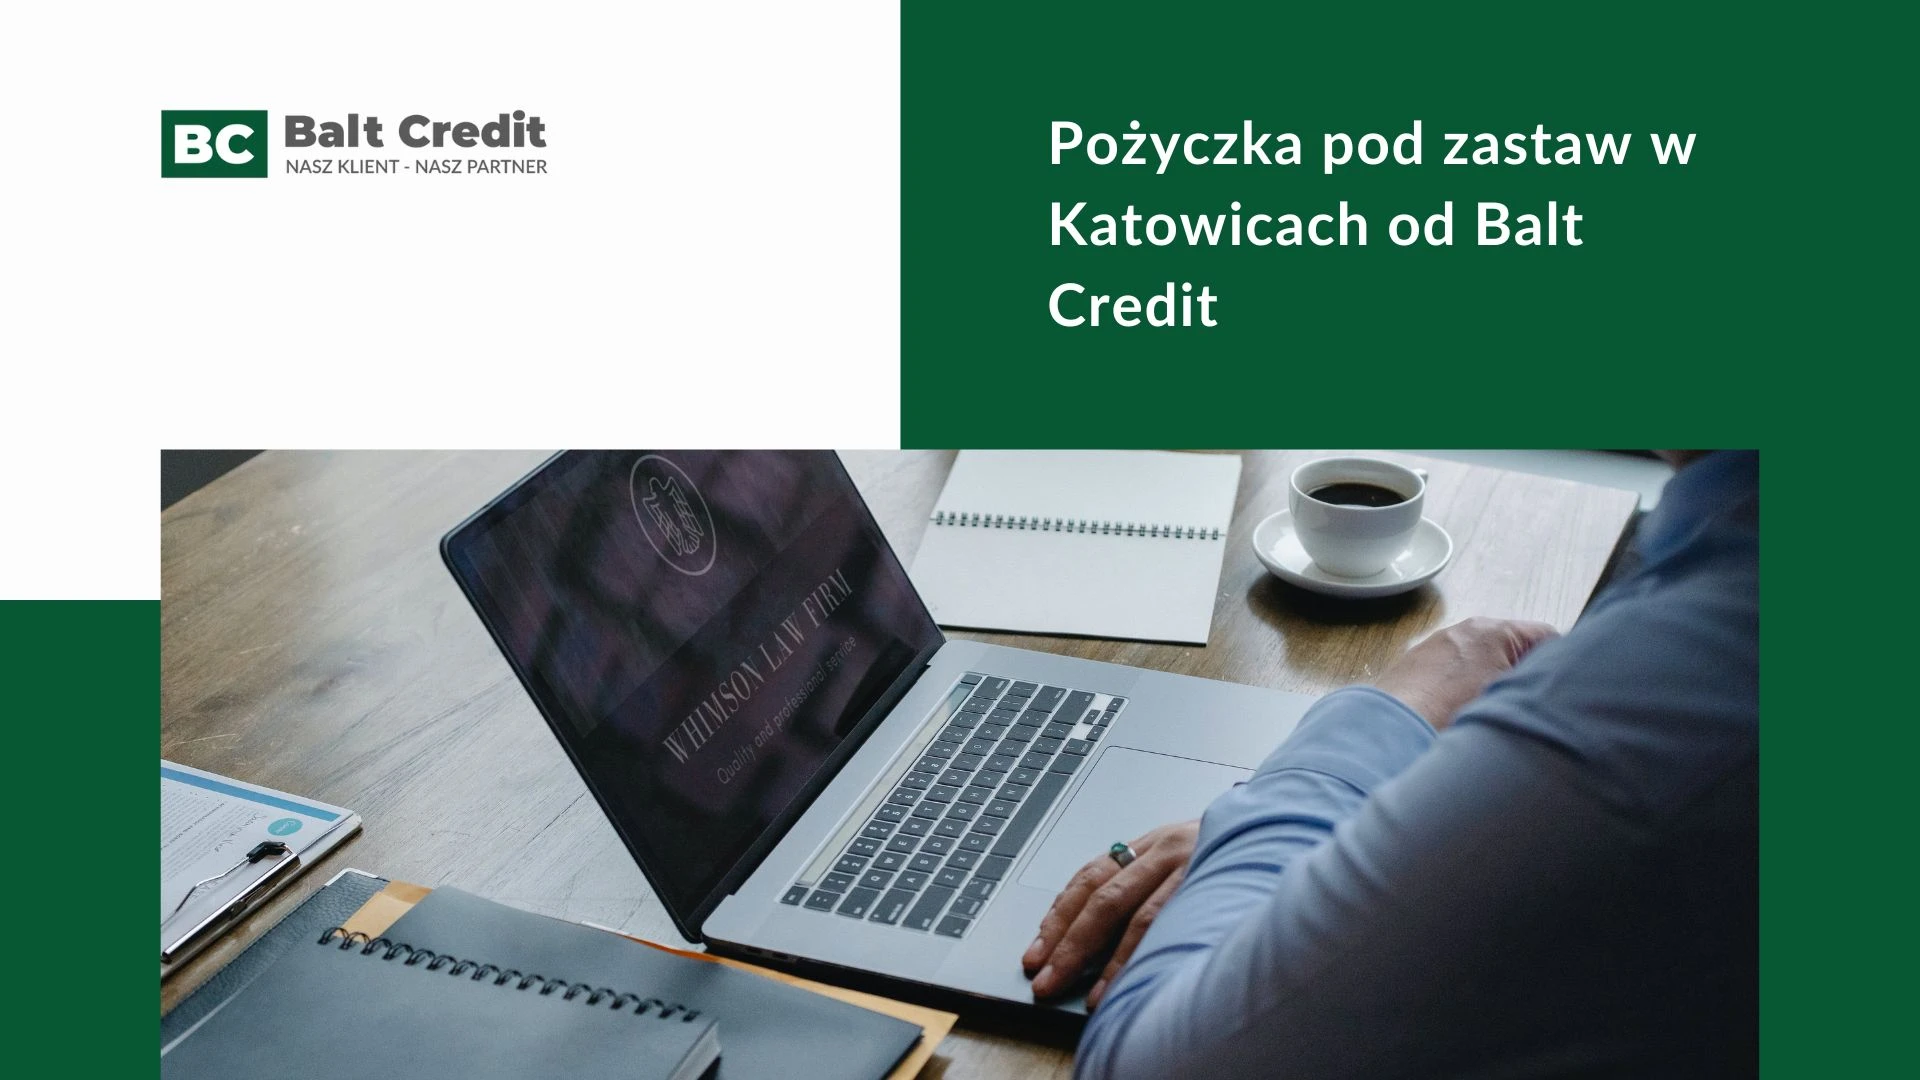 Pożyczka pod zastaw w Katowicach od Balt Credit